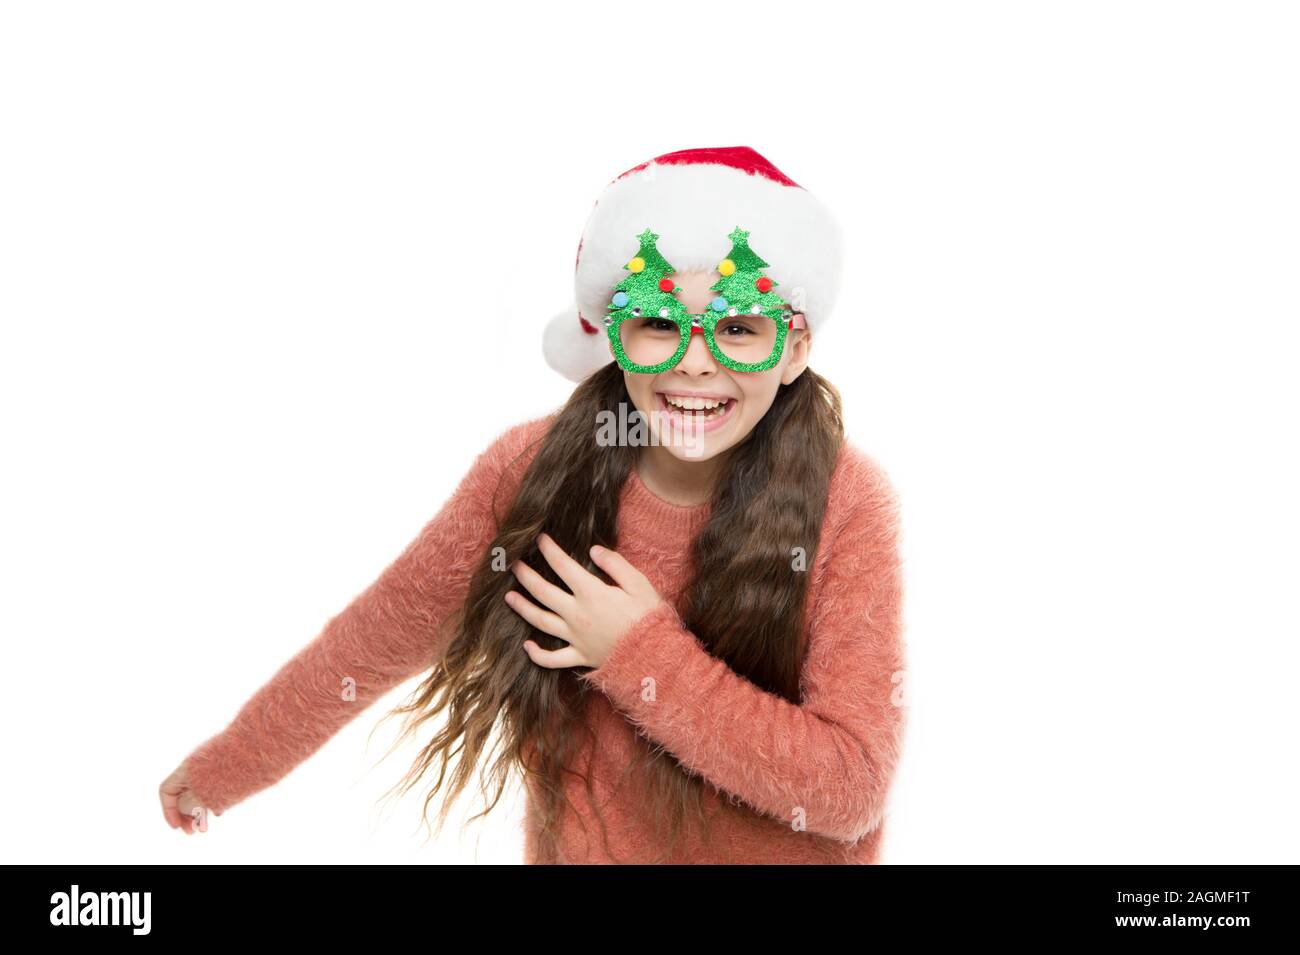 Laufen Sie weg. Weihnachtsfeiertag. Kleine Mädchen in Santa hat. Spaß haben. Glückliches Kind Weihnachtsbaum Brillen Zubehör stand Requisiten. Little santa. Christmas Event und Entertainment. Glücklich über das neue Jahr. Stockfoto